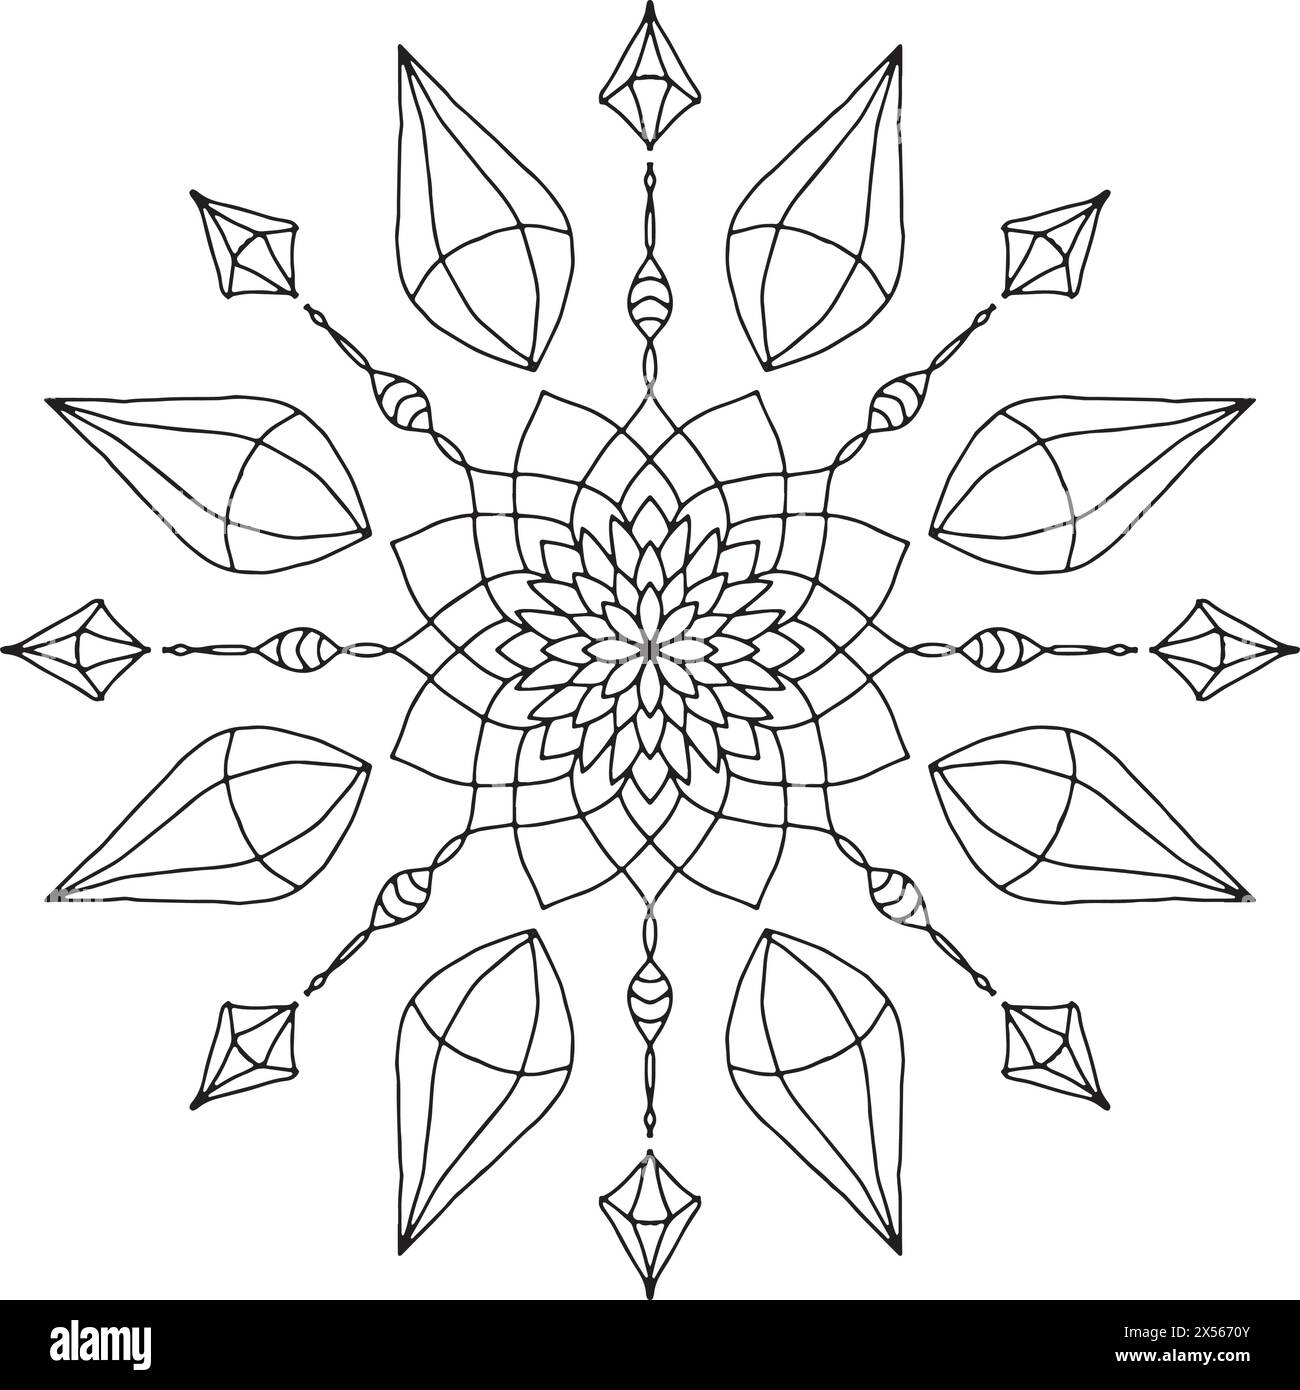 Abstraktes Mandala-Design mit konzentrischen Kreisen, Edelsteinen und Blättern Stock Vektor